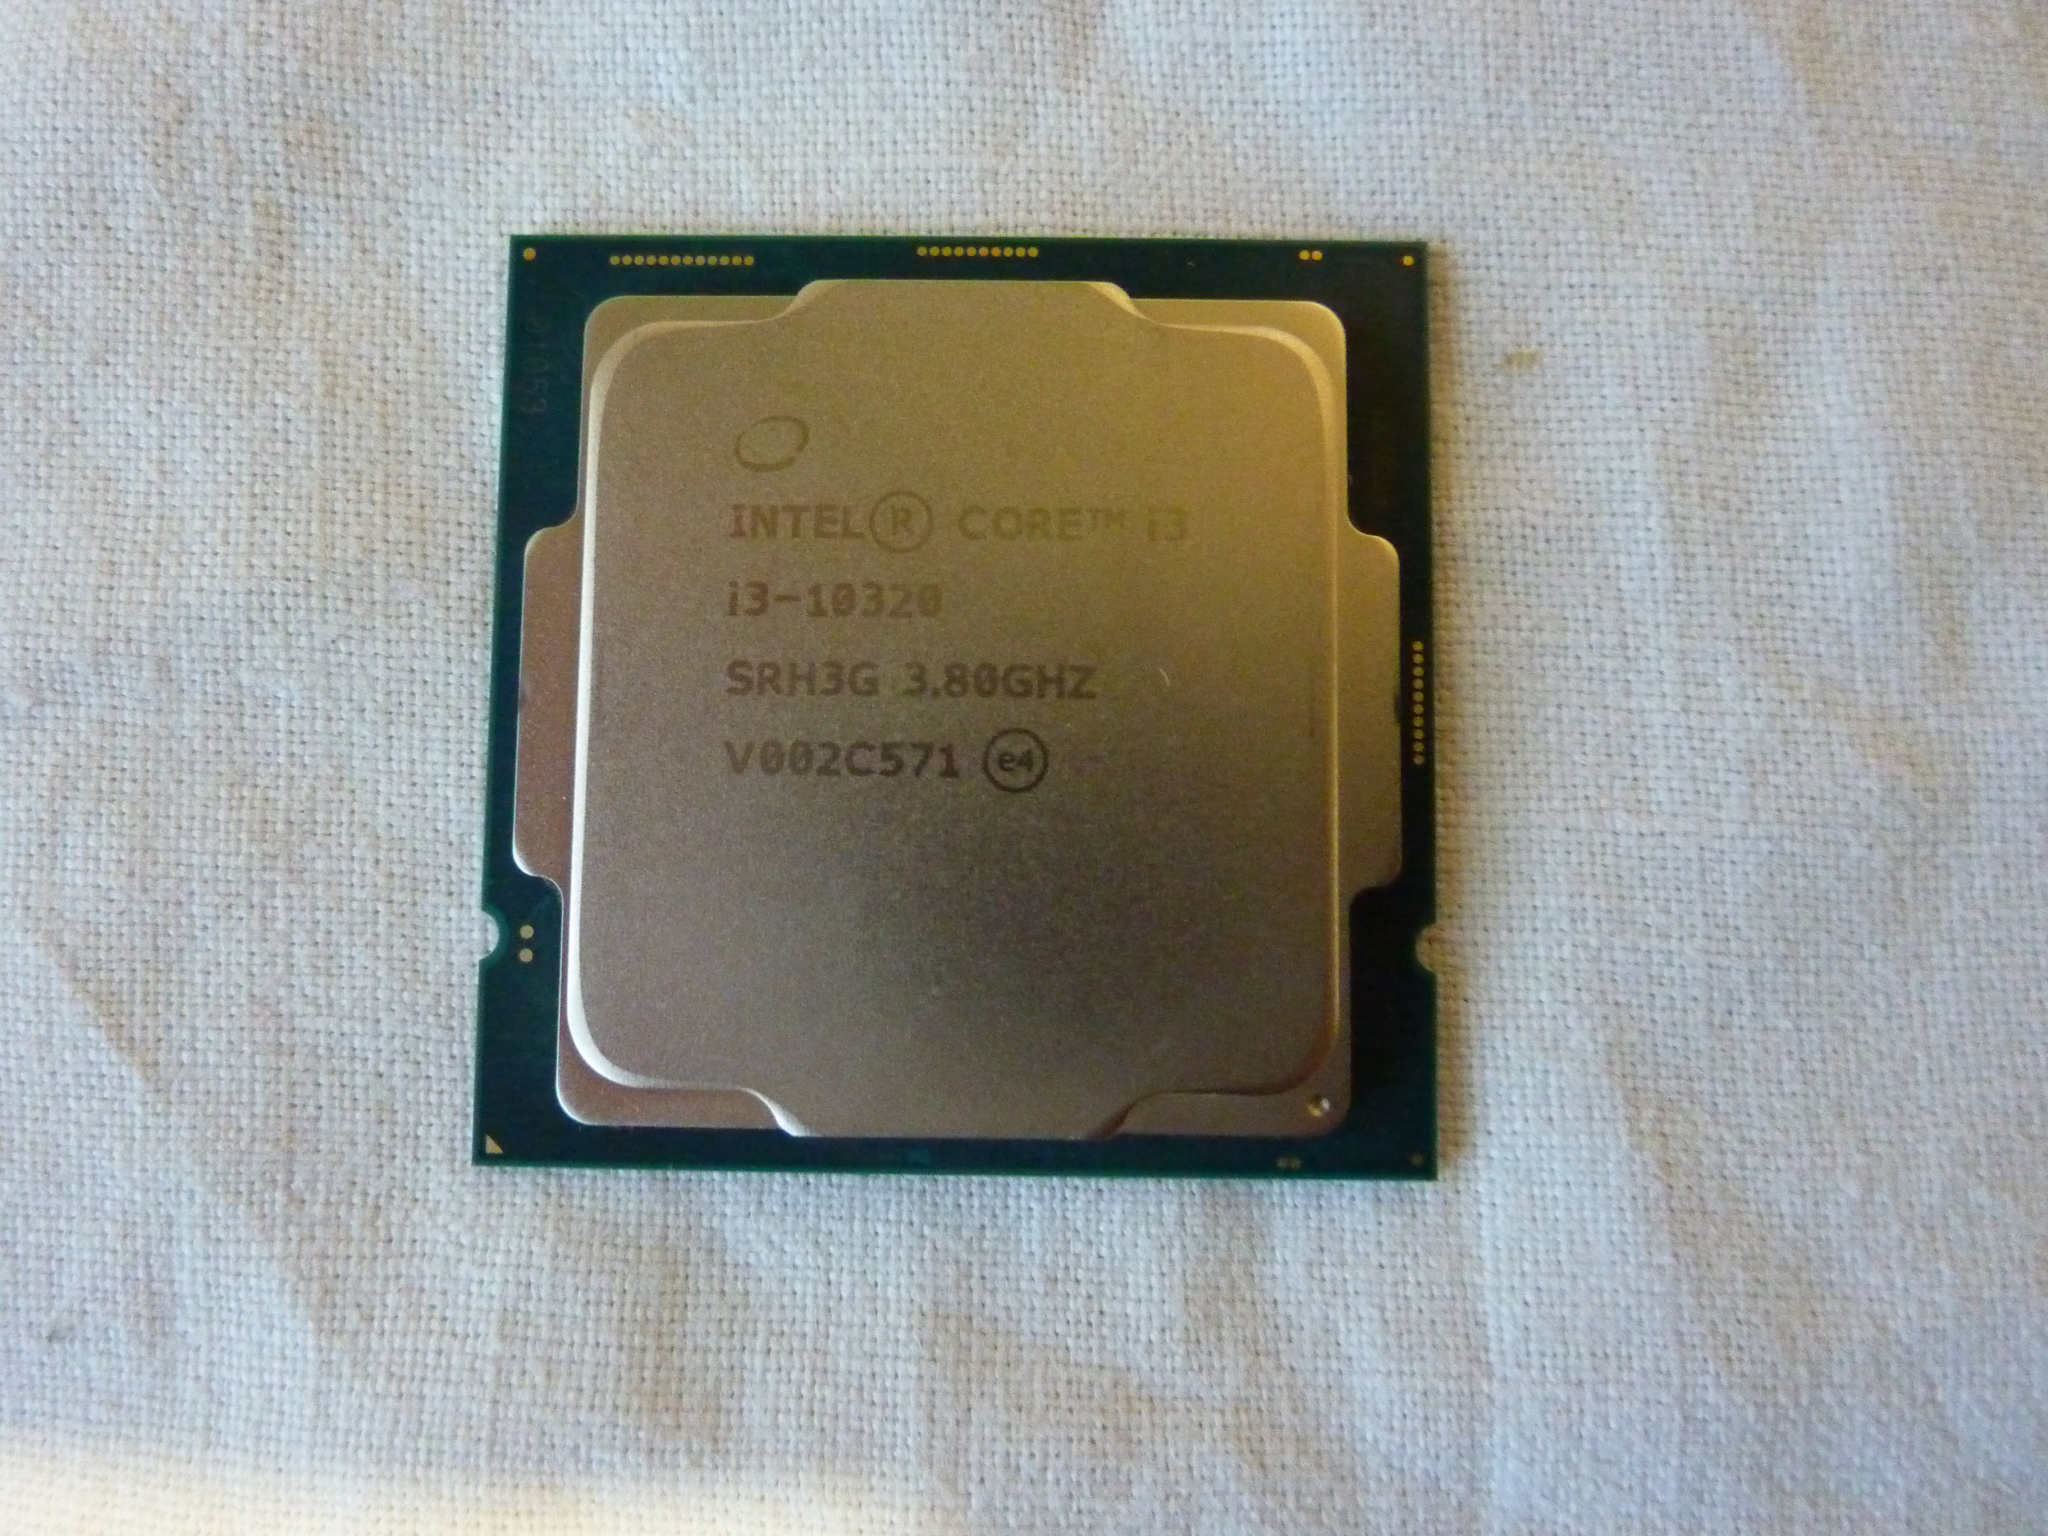 Интел коре ай3. Интел кор i3 2021. Процессор Интел ай 3. Процессор Intel Core i3-10320.